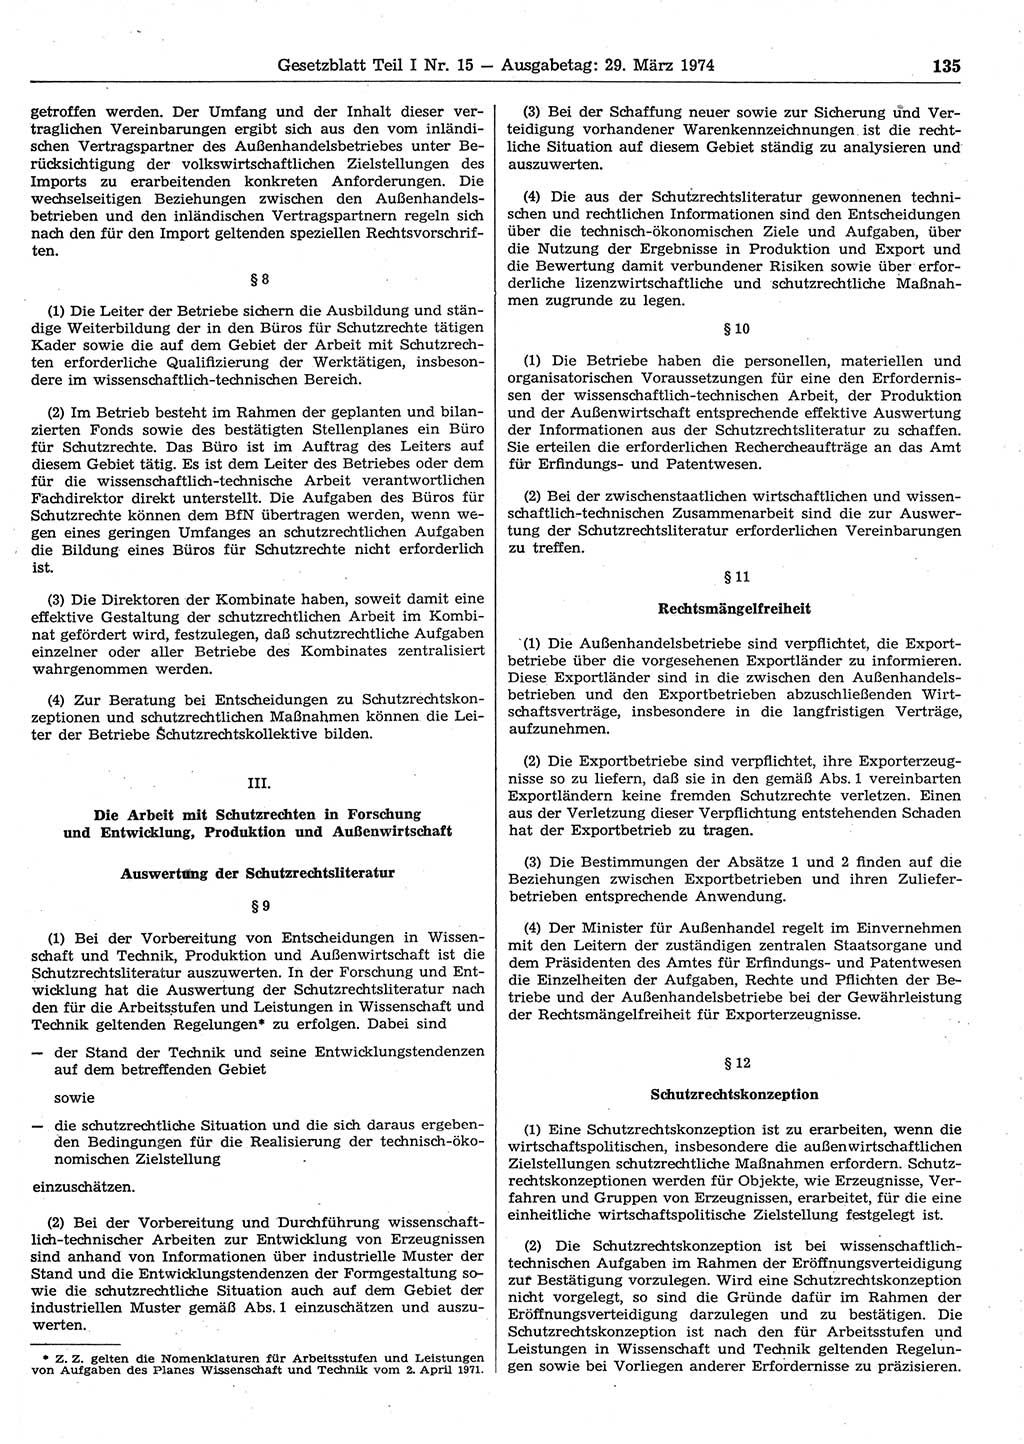 Gesetzblatt (GBl.) der Deutschen Demokratischen Republik (DDR) Teil Ⅰ 1974, Seite 135 (GBl. DDR Ⅰ 1974, S. 135)